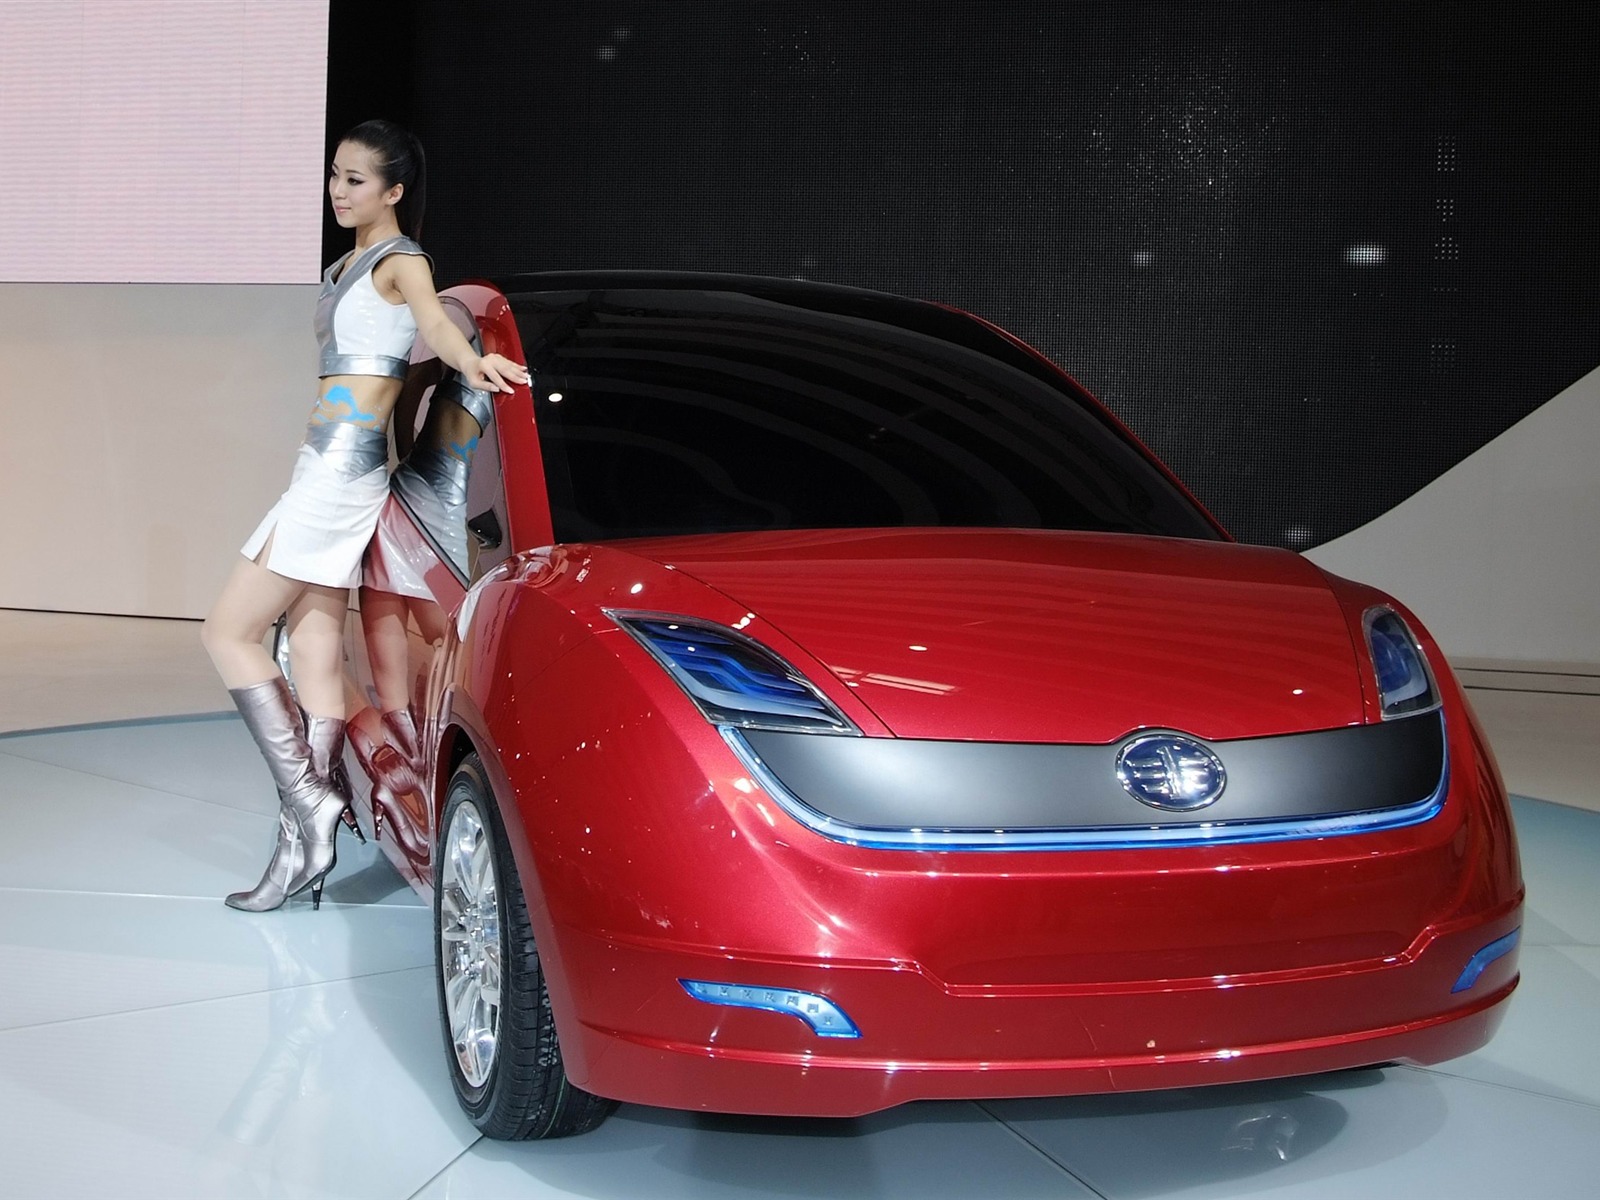 2010北京国际车展 香车美女 (螺纹钢作品)24 - 1600x1200